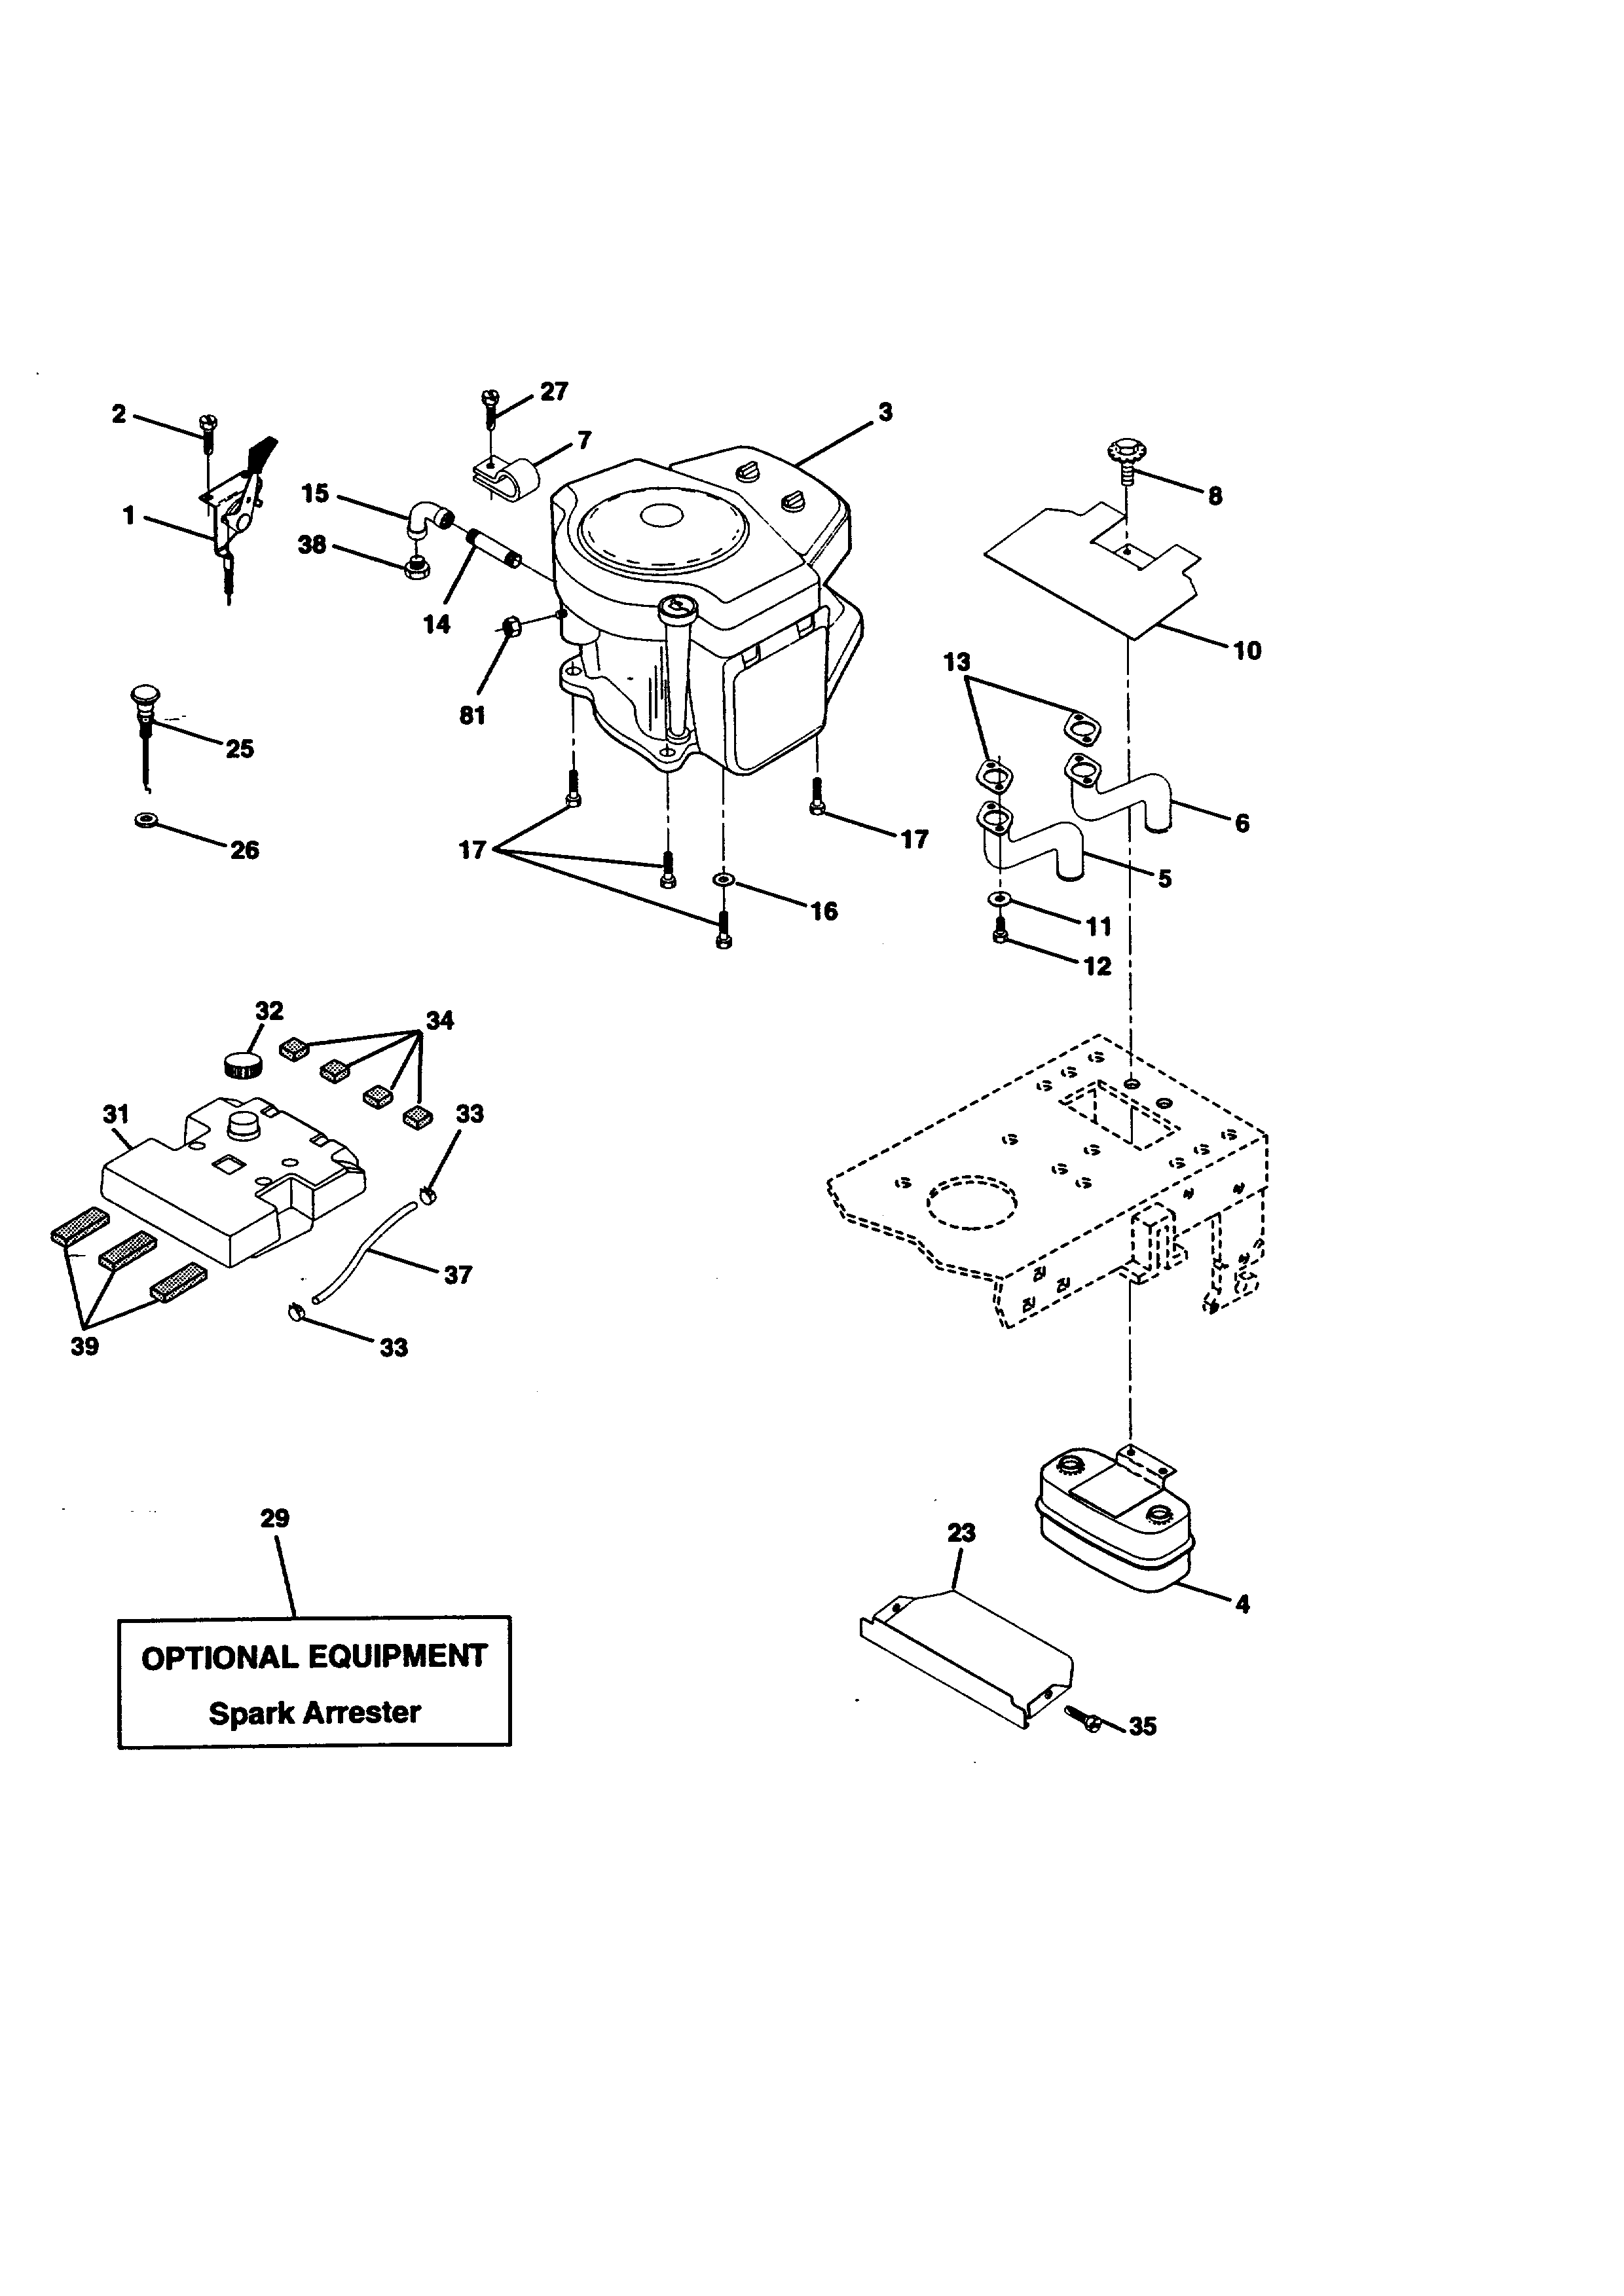 Engine Diagram  U0026 Parts List For Model 917270821 Craftsman